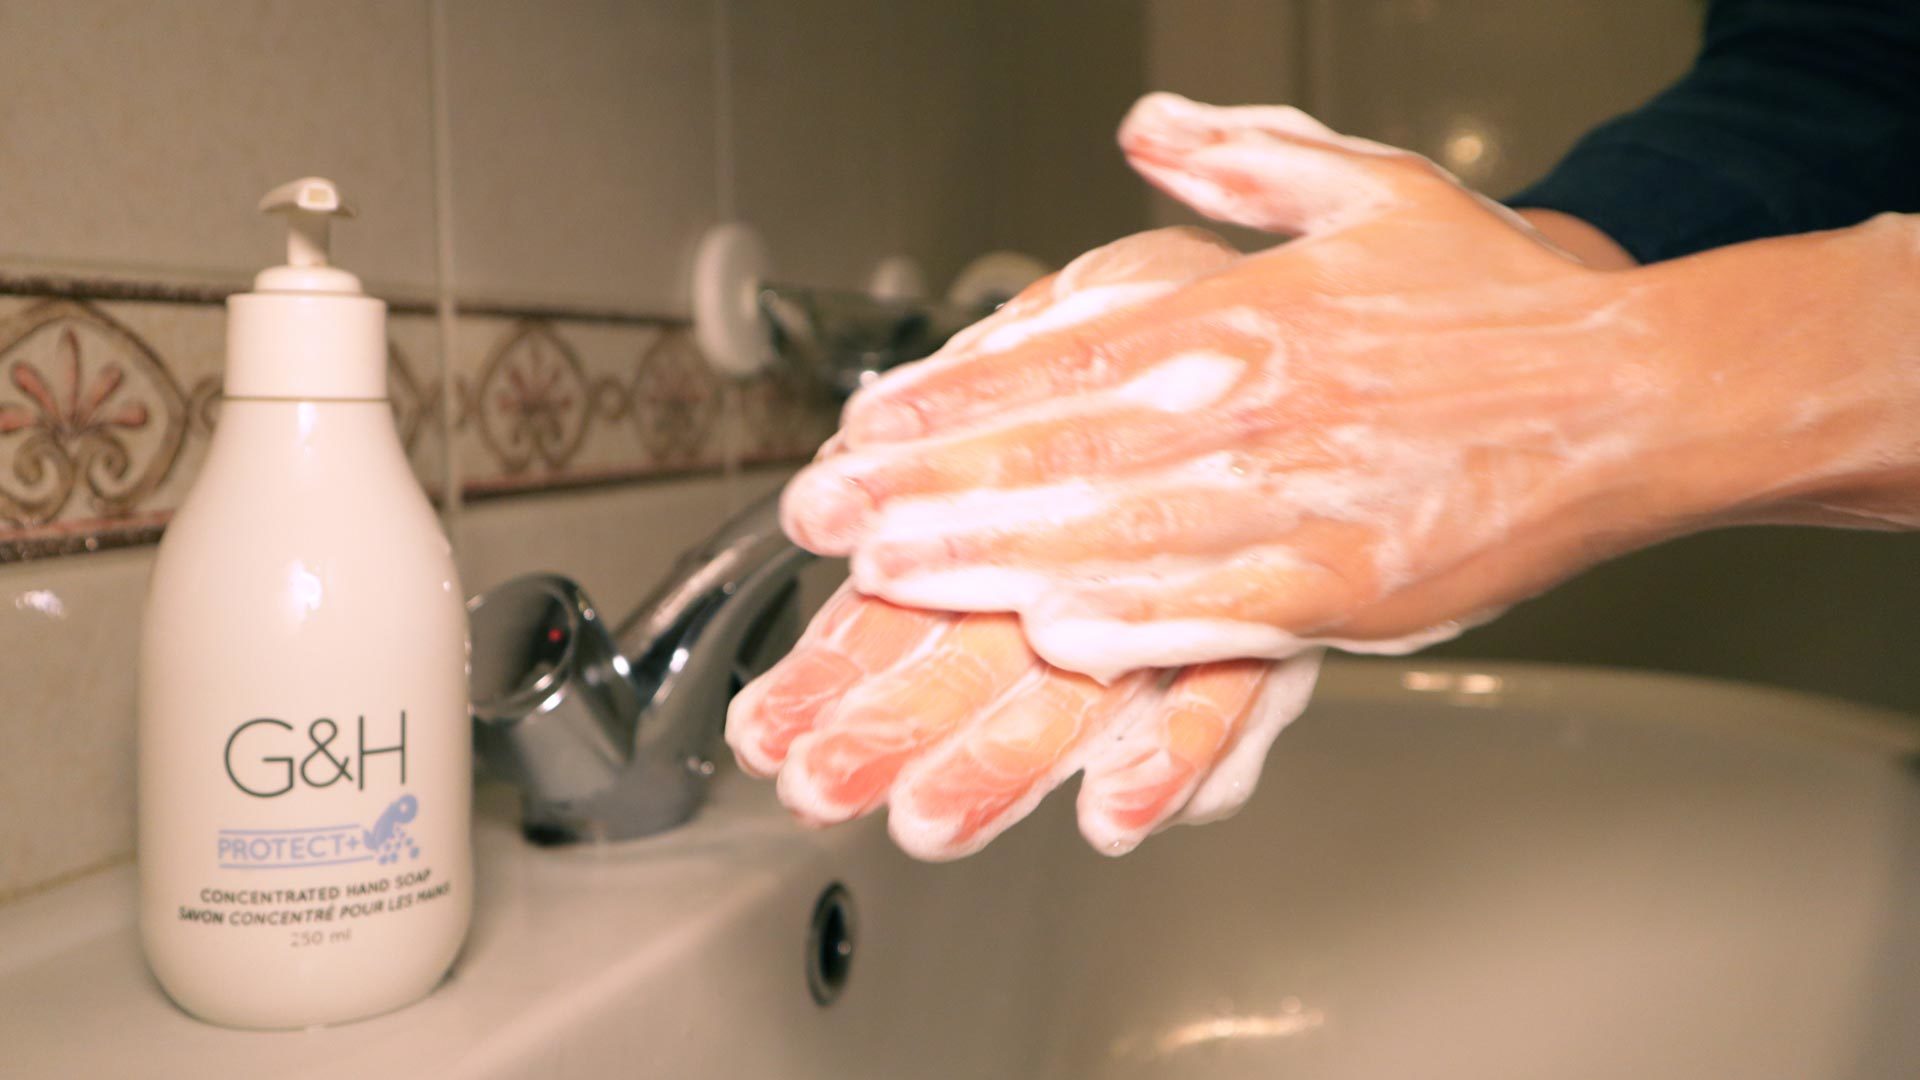 Lavar as mãos com sabonete líquido G&H Protect